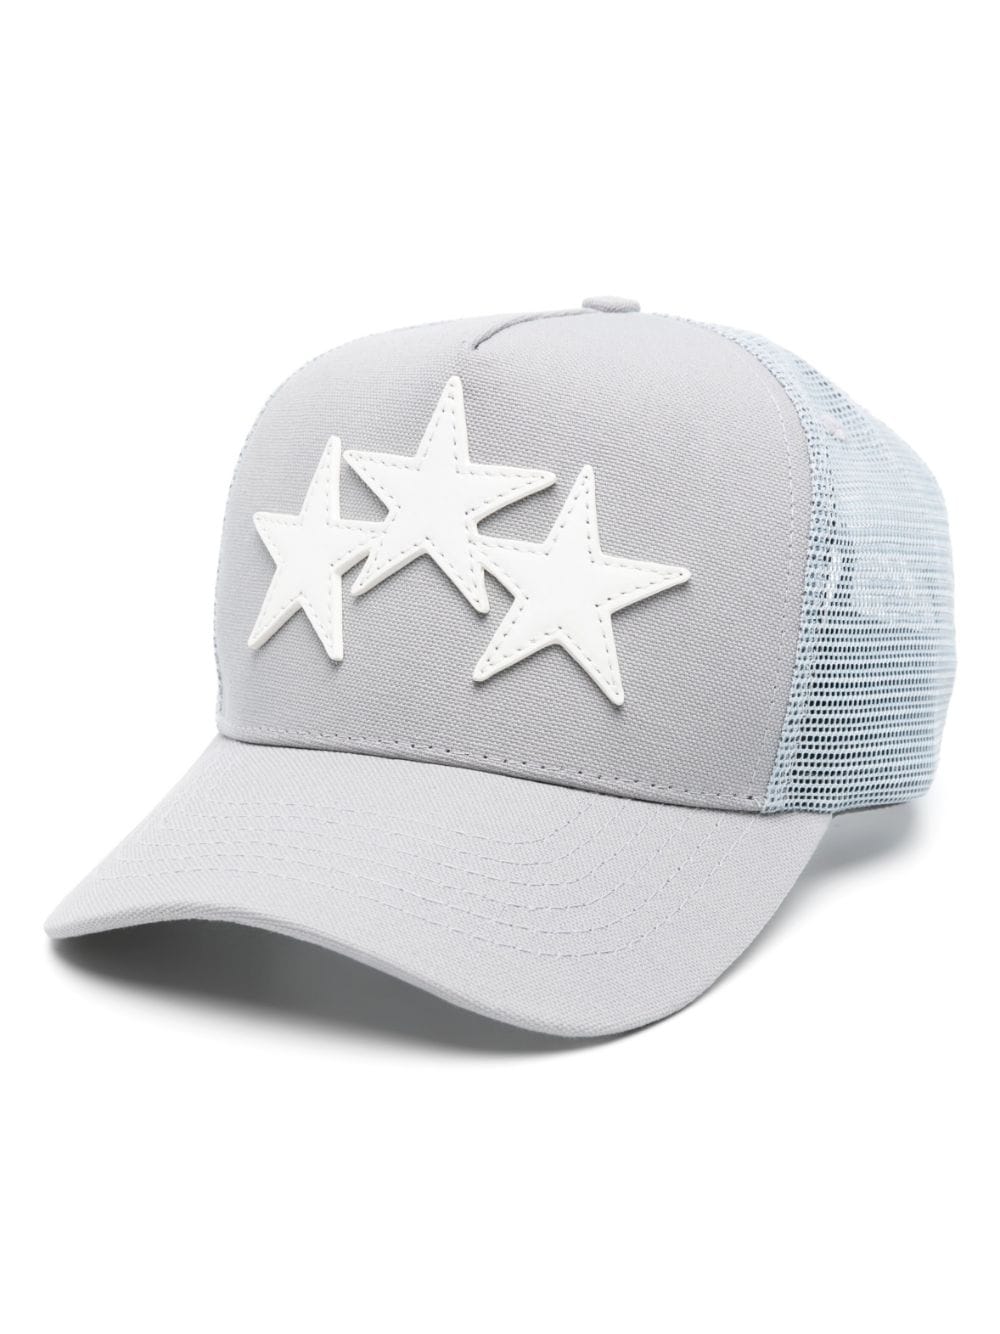 Three Star Trucker Hat